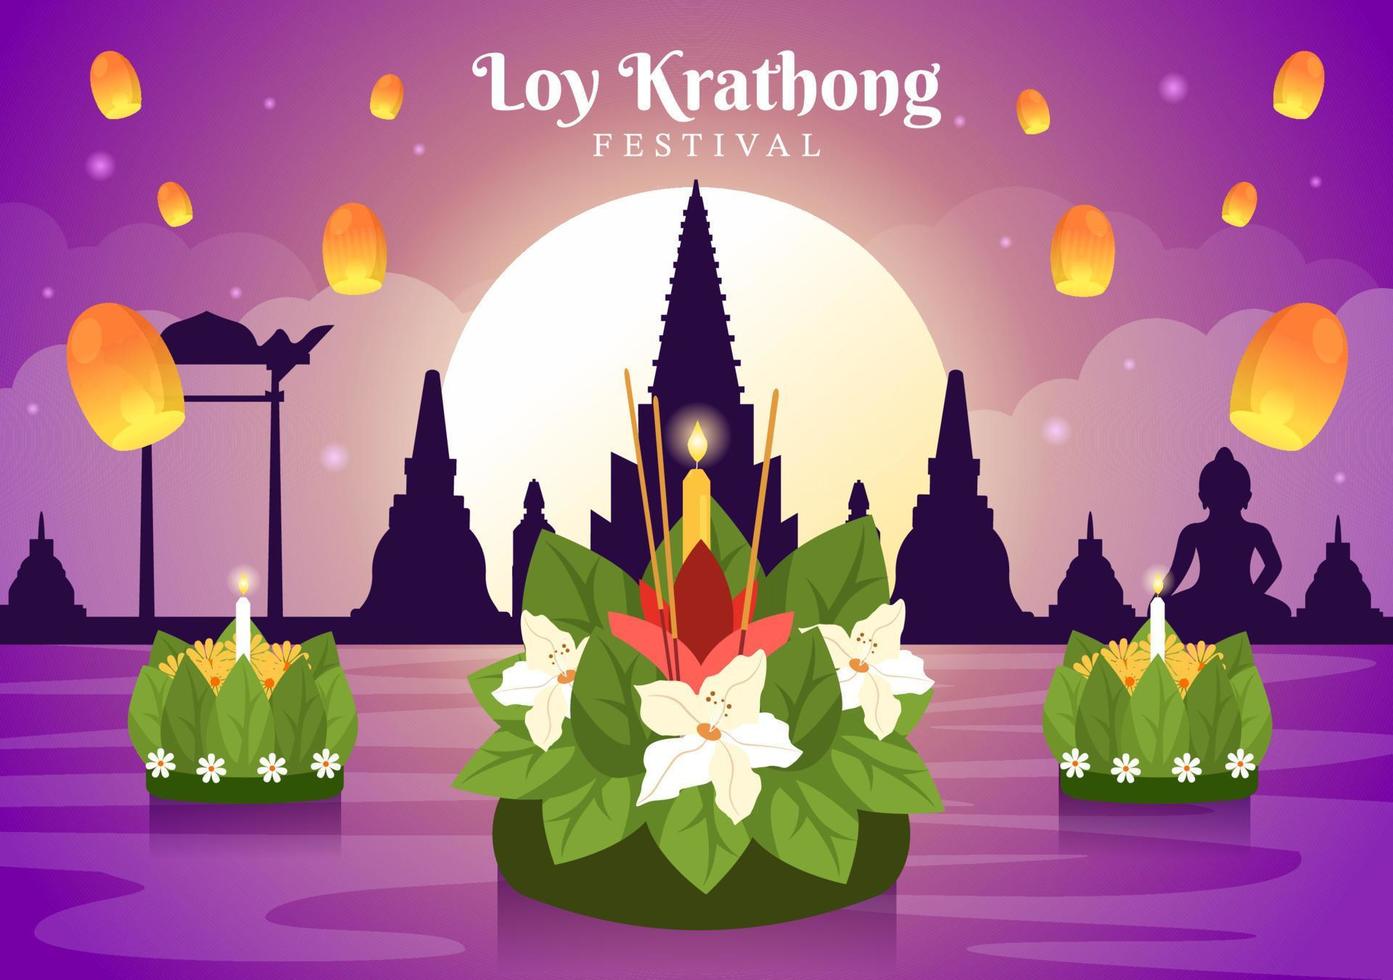 célébration du festival loy krathong en thaïlande modèle illustration plate de dessin animé dessiné à la main avec des lanternes et des krathongs flottant sur la conception de l'eau vecteur